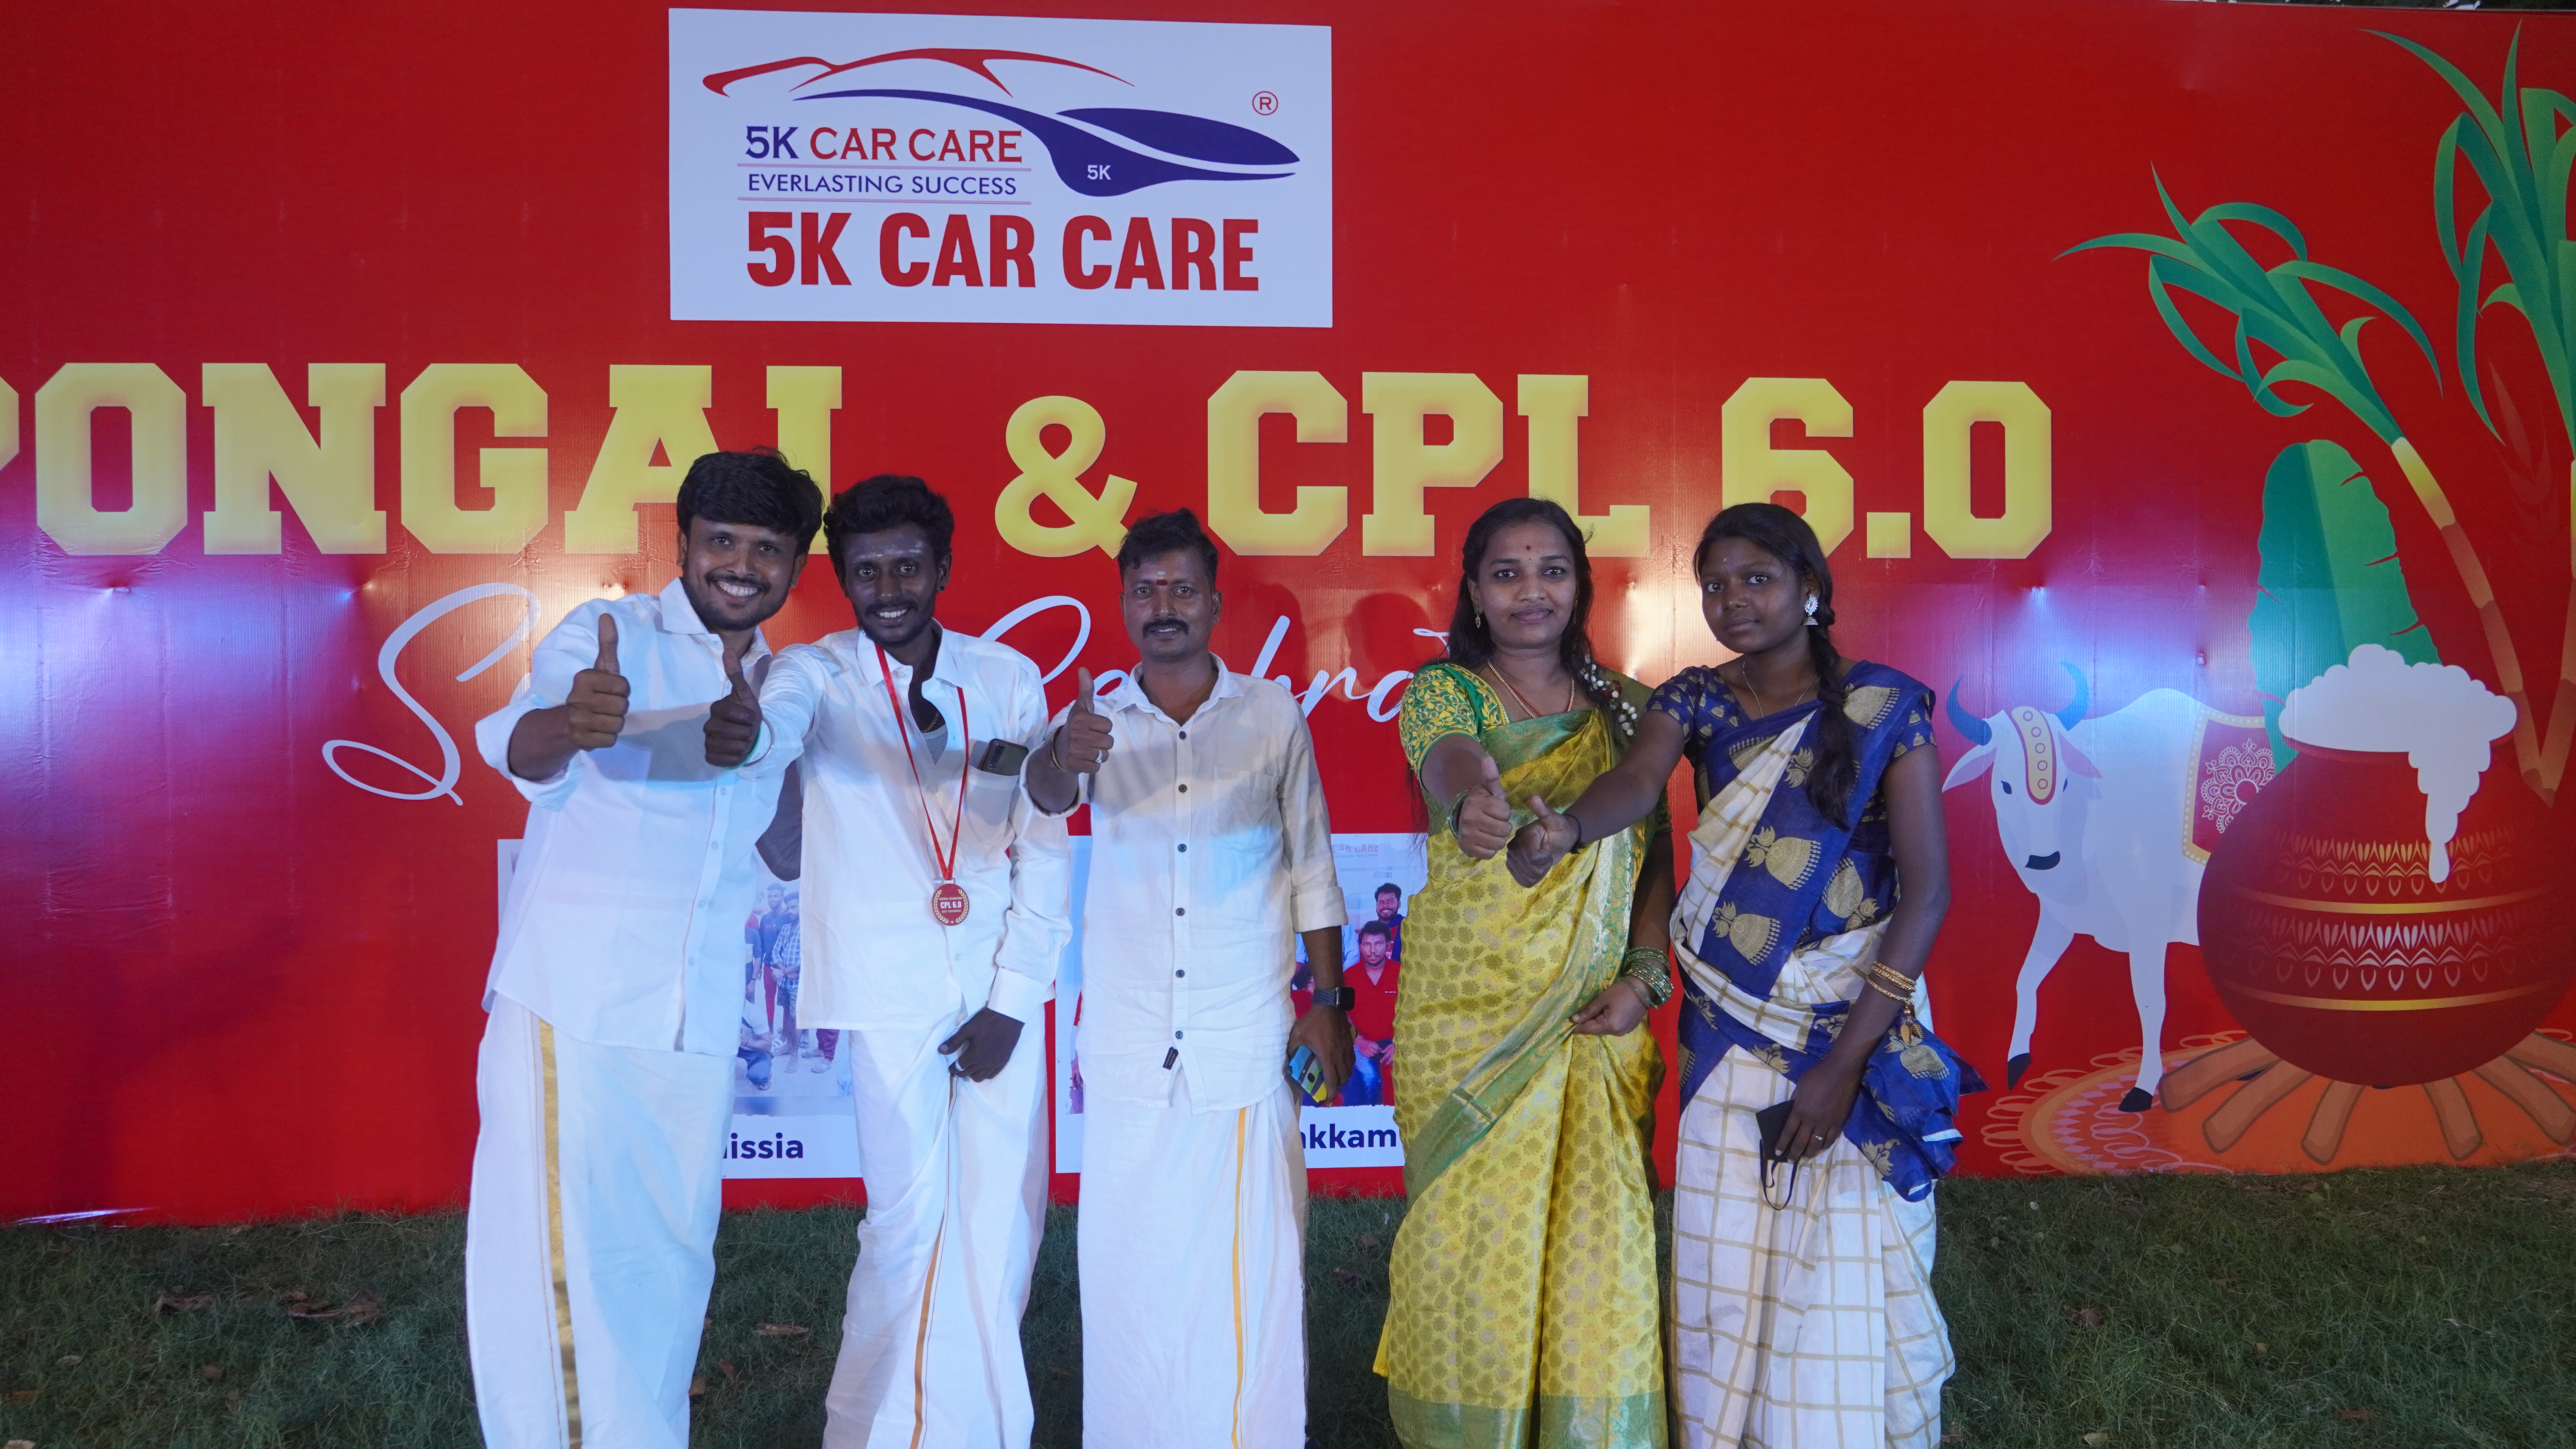 5k Car Care